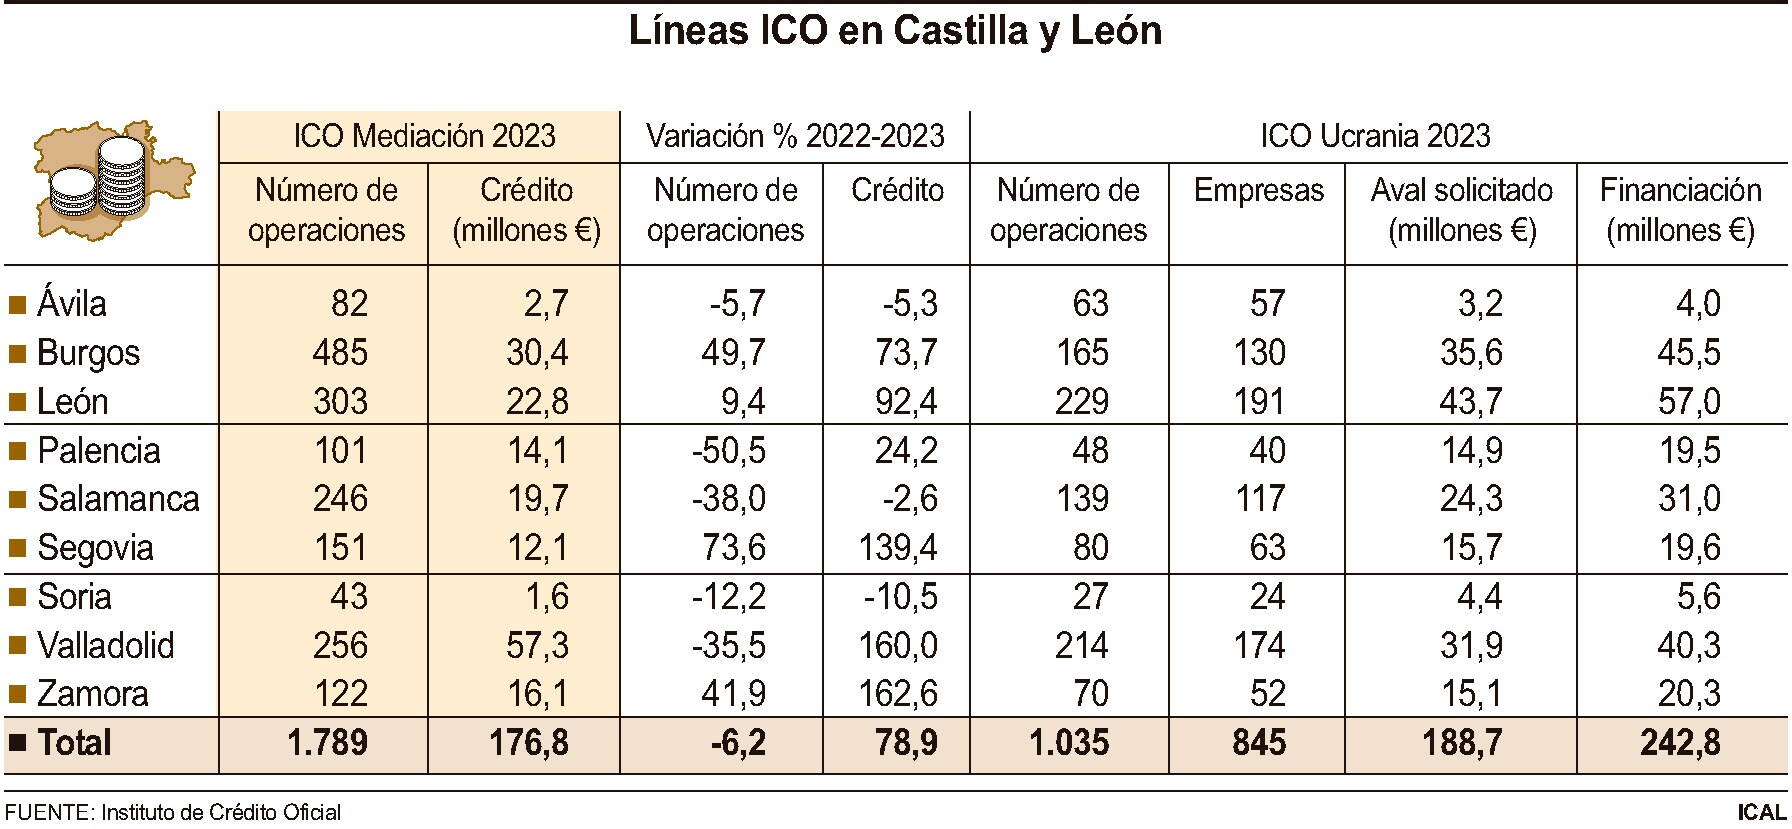 Gráfico de las líneas ICO en Castilla y León.